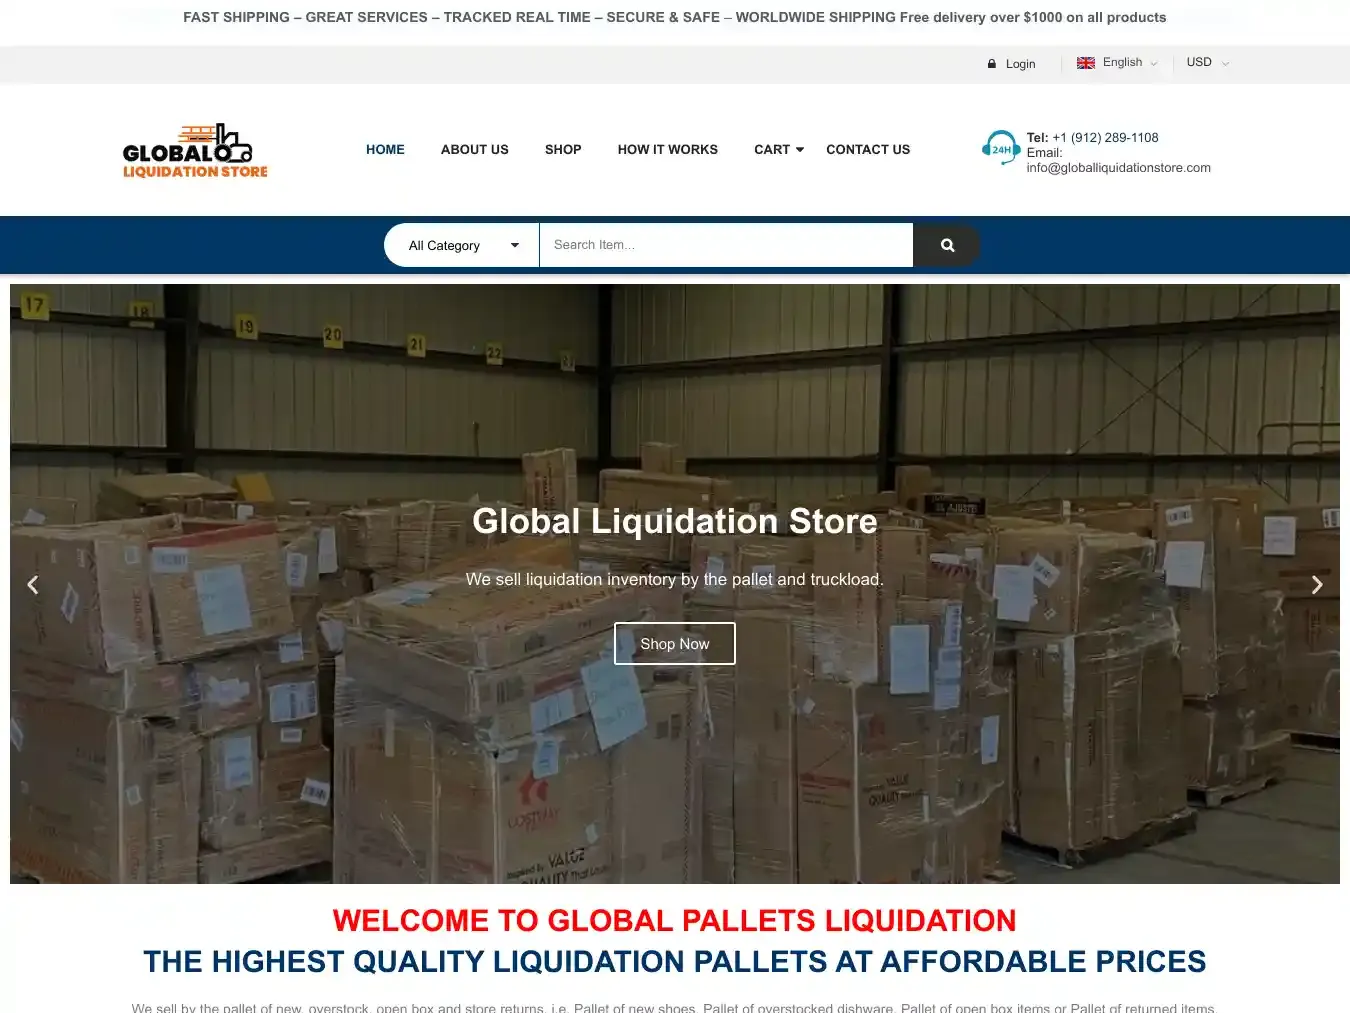 Globalliquidationstore.com Fraudulent Liquidation website.